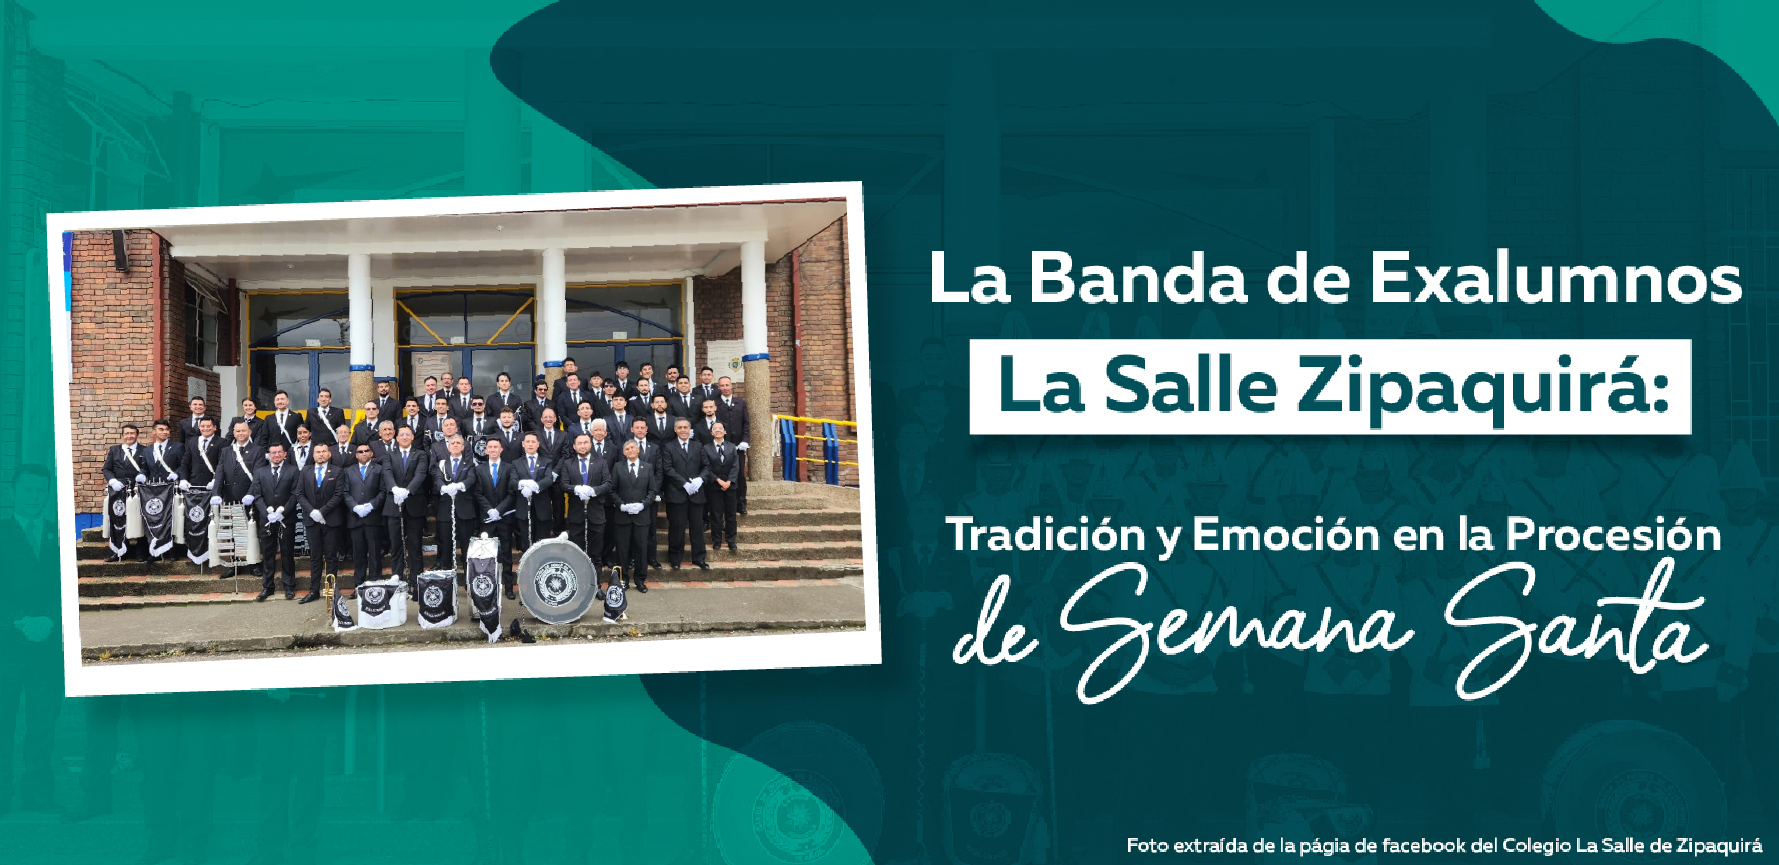 La Banda de Exalumnos La Salle Zipaquirá: Tradición y Emoción en la Procesión de Semana Santa